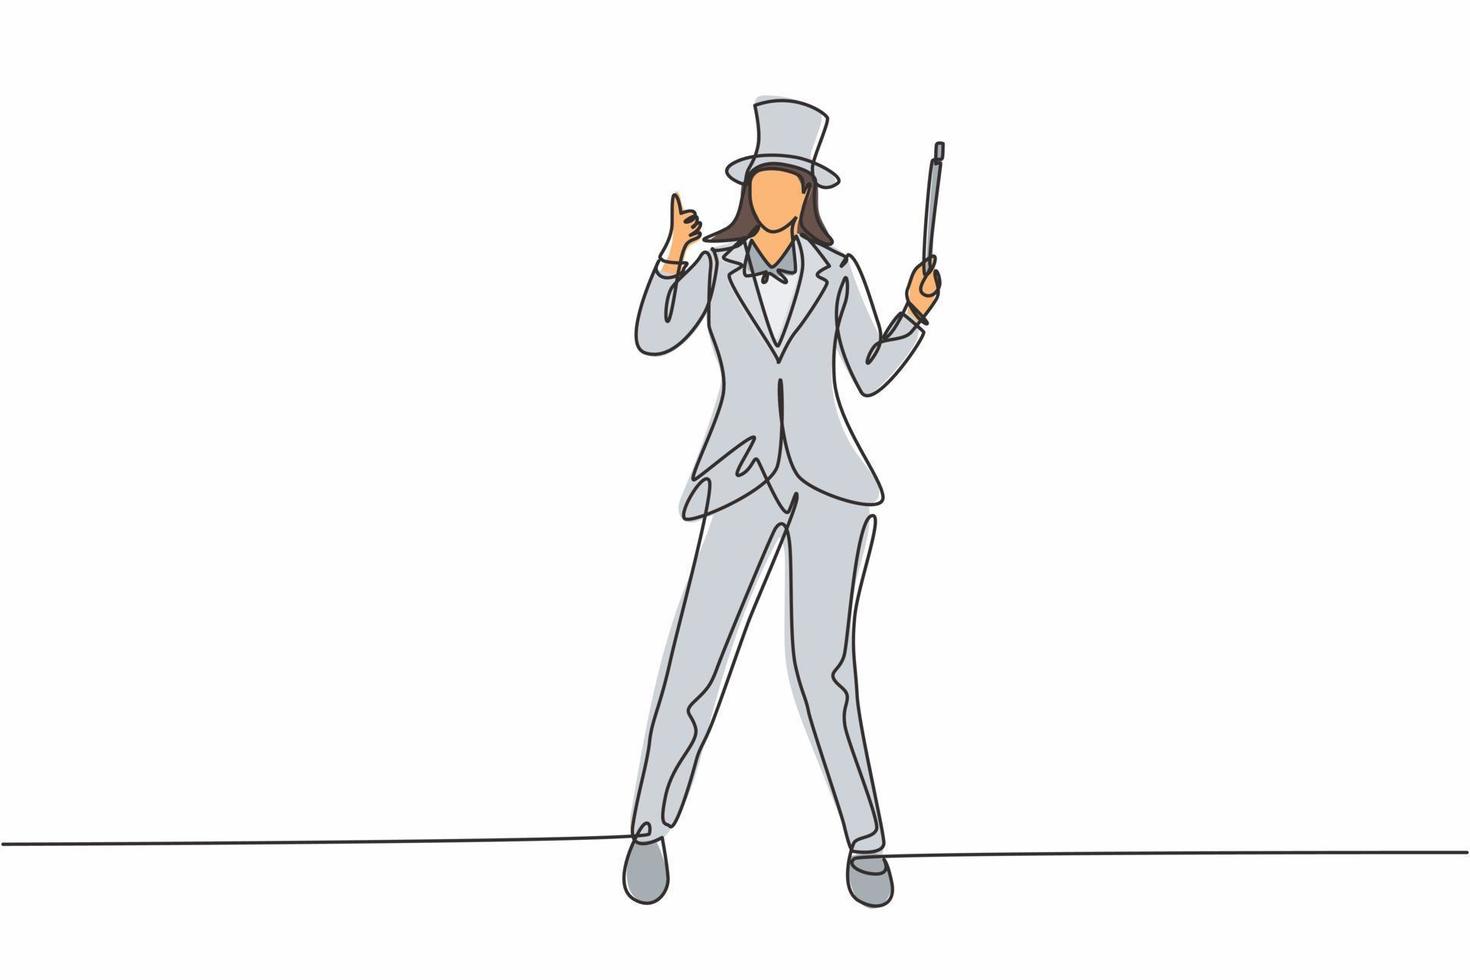 Una maga de dibujo de línea continua única se para con un gesto de pulgar hacia arriba con un sombrero y una varita mágica realizando trucos en un espectáculo de circo. Ilustración de vector de diseño gráfico de dibujo de una línea